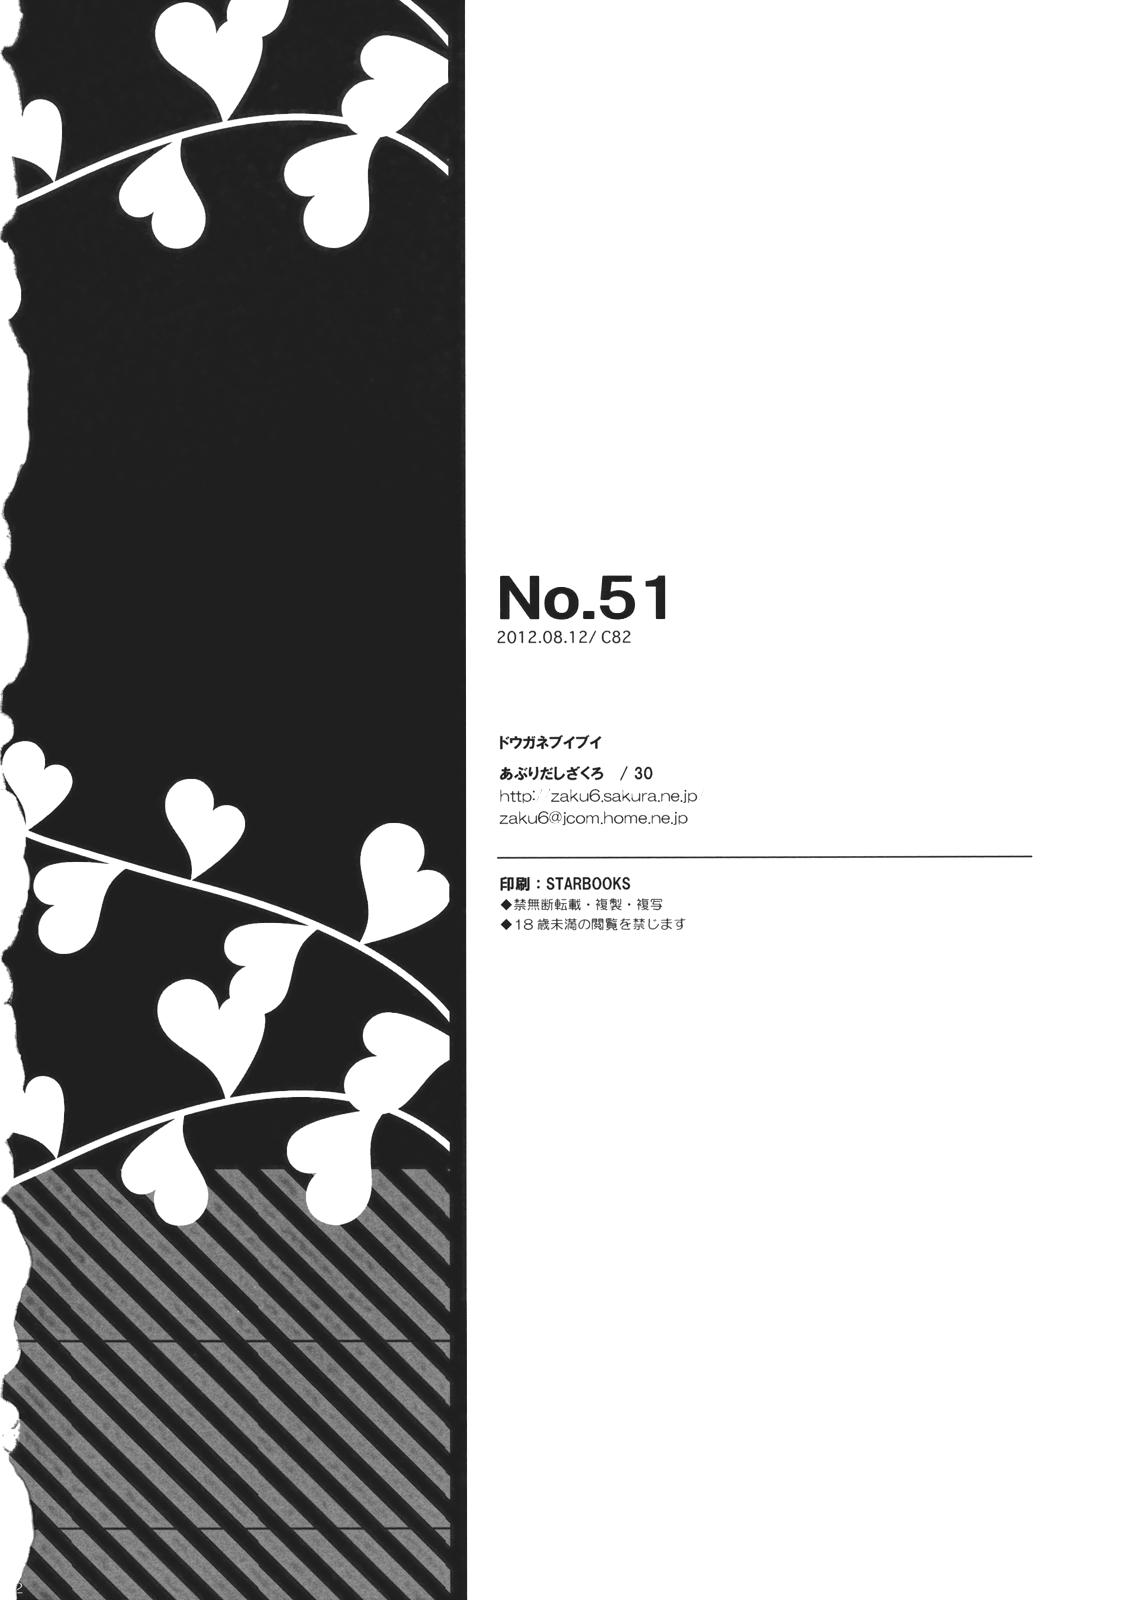 No.51 21